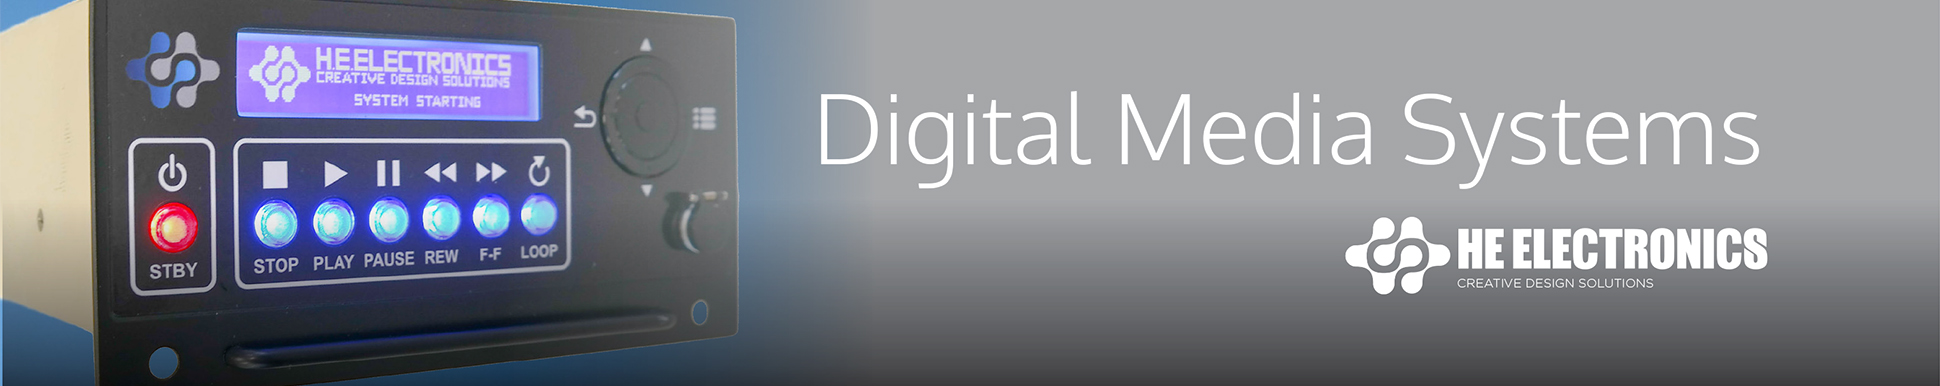 Digital Media Systems